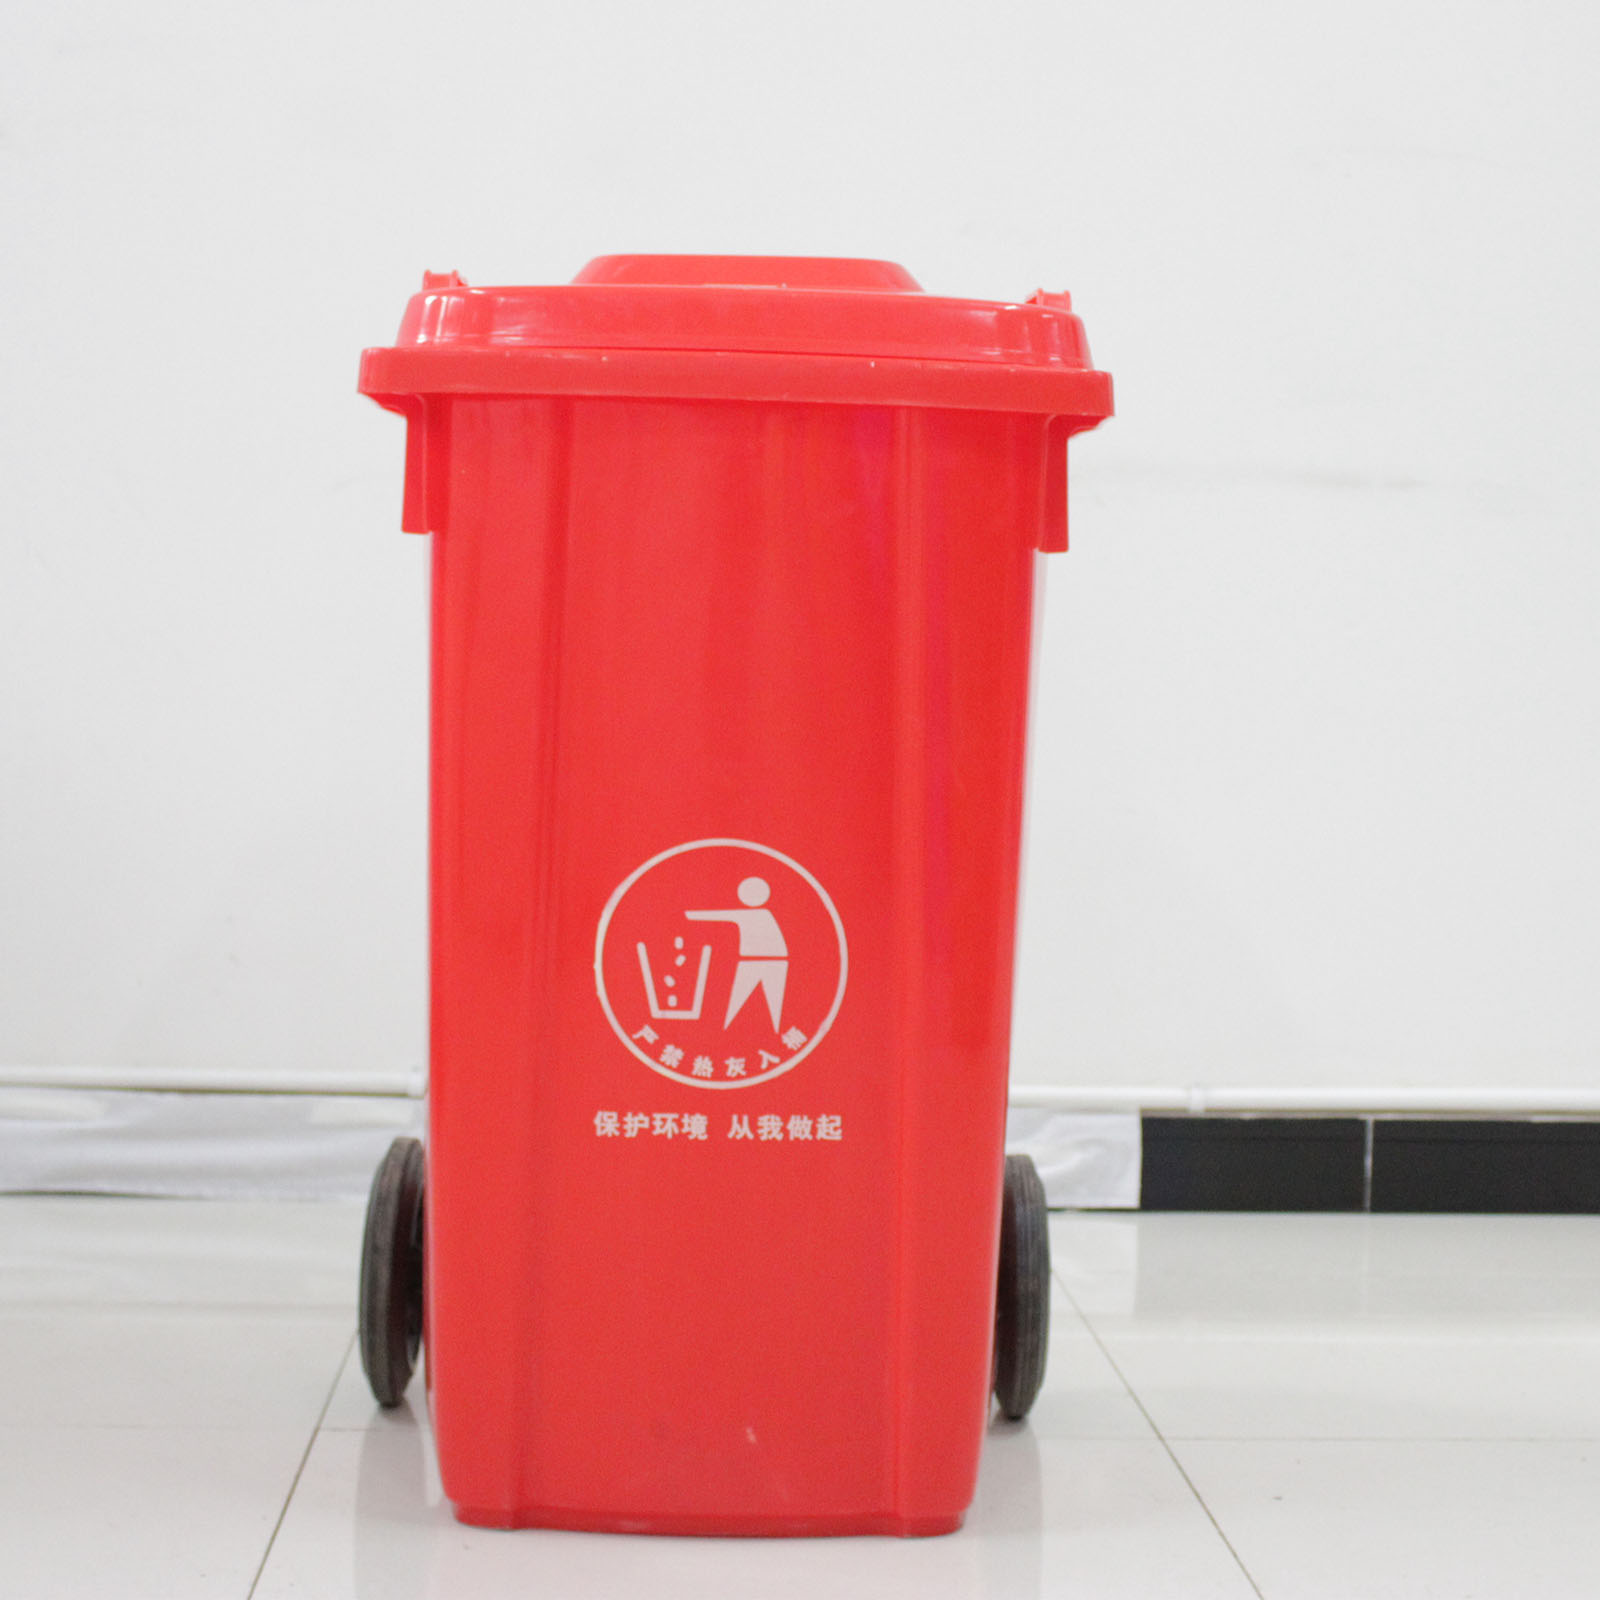 重庆100L环卫垃圾桶 环保挂车塑料垃圾桶厂家直销 100L环卫塑料垃圾桶图片